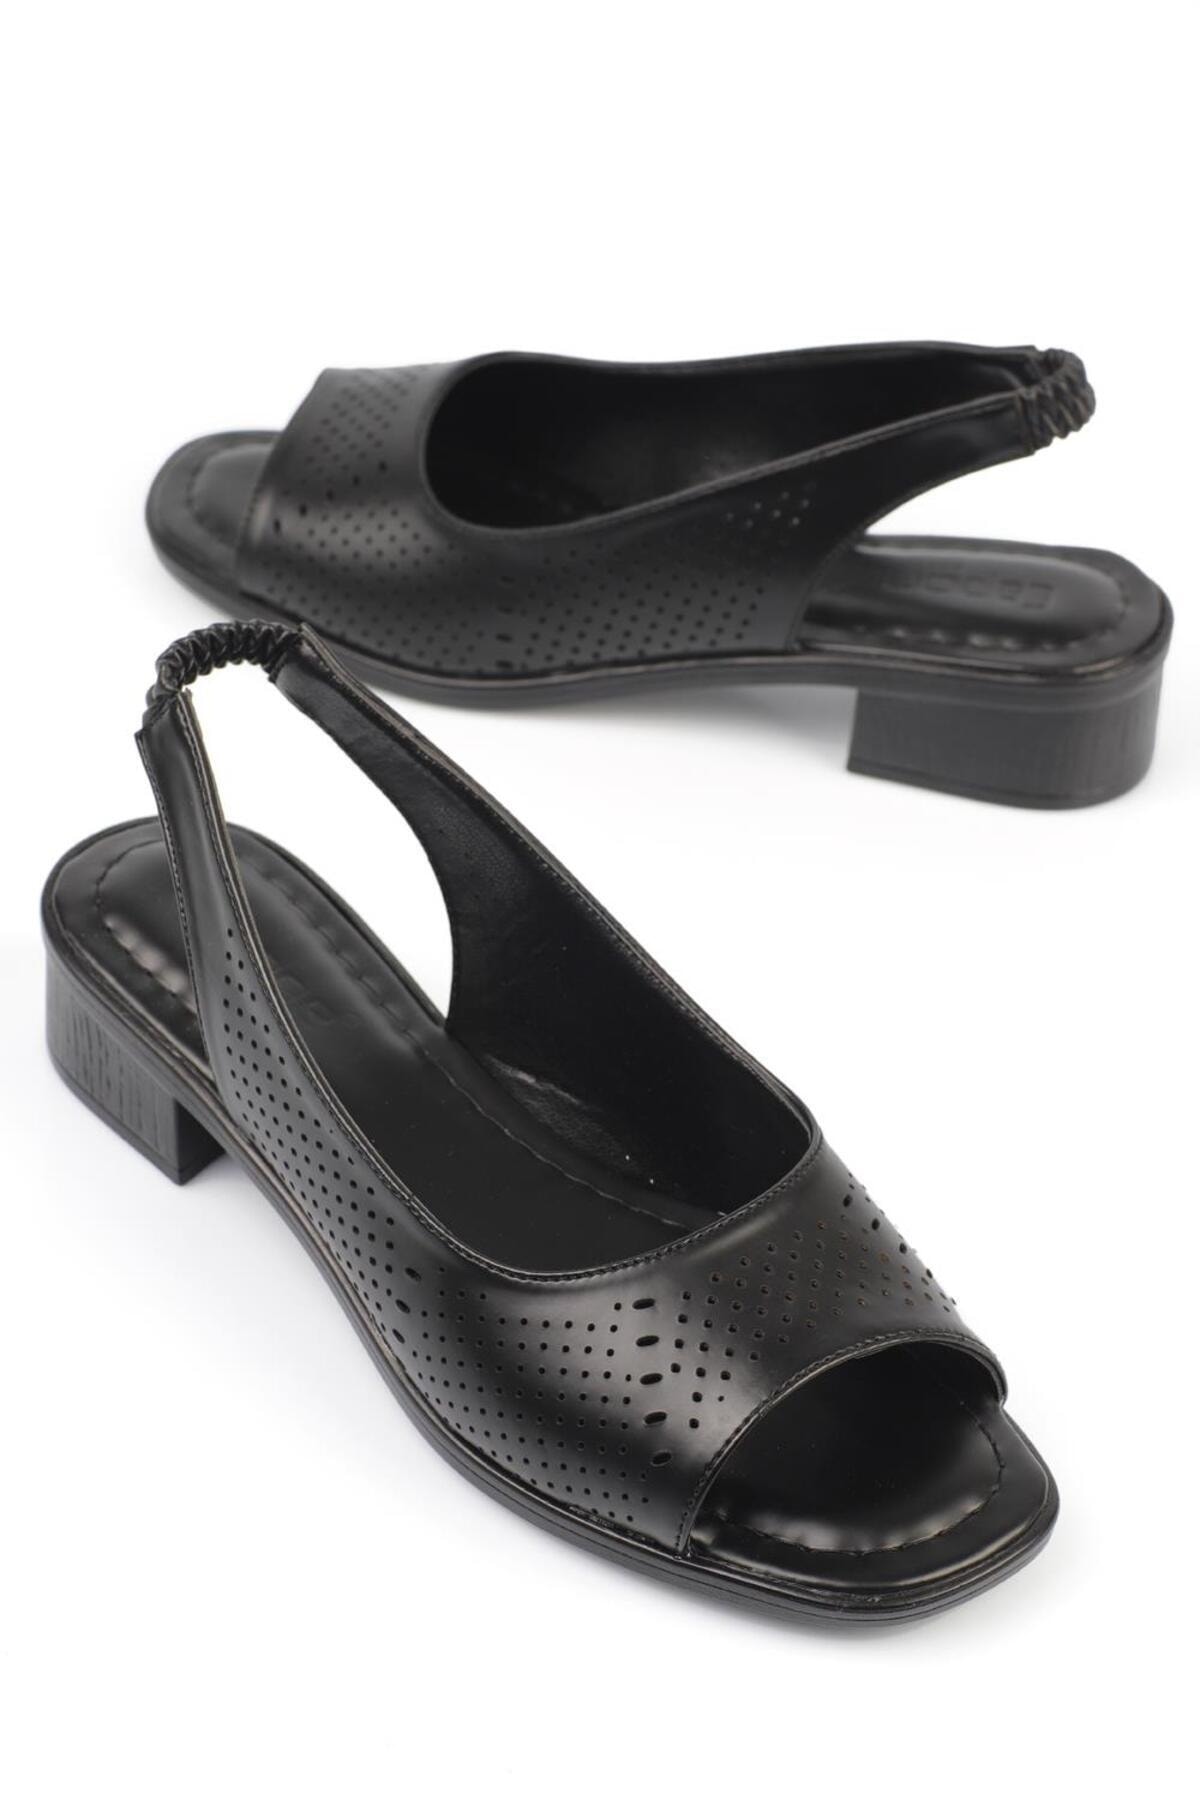 Capone Outfitters Чорні жіночі туфлі на підборах Capone з відкритим передом